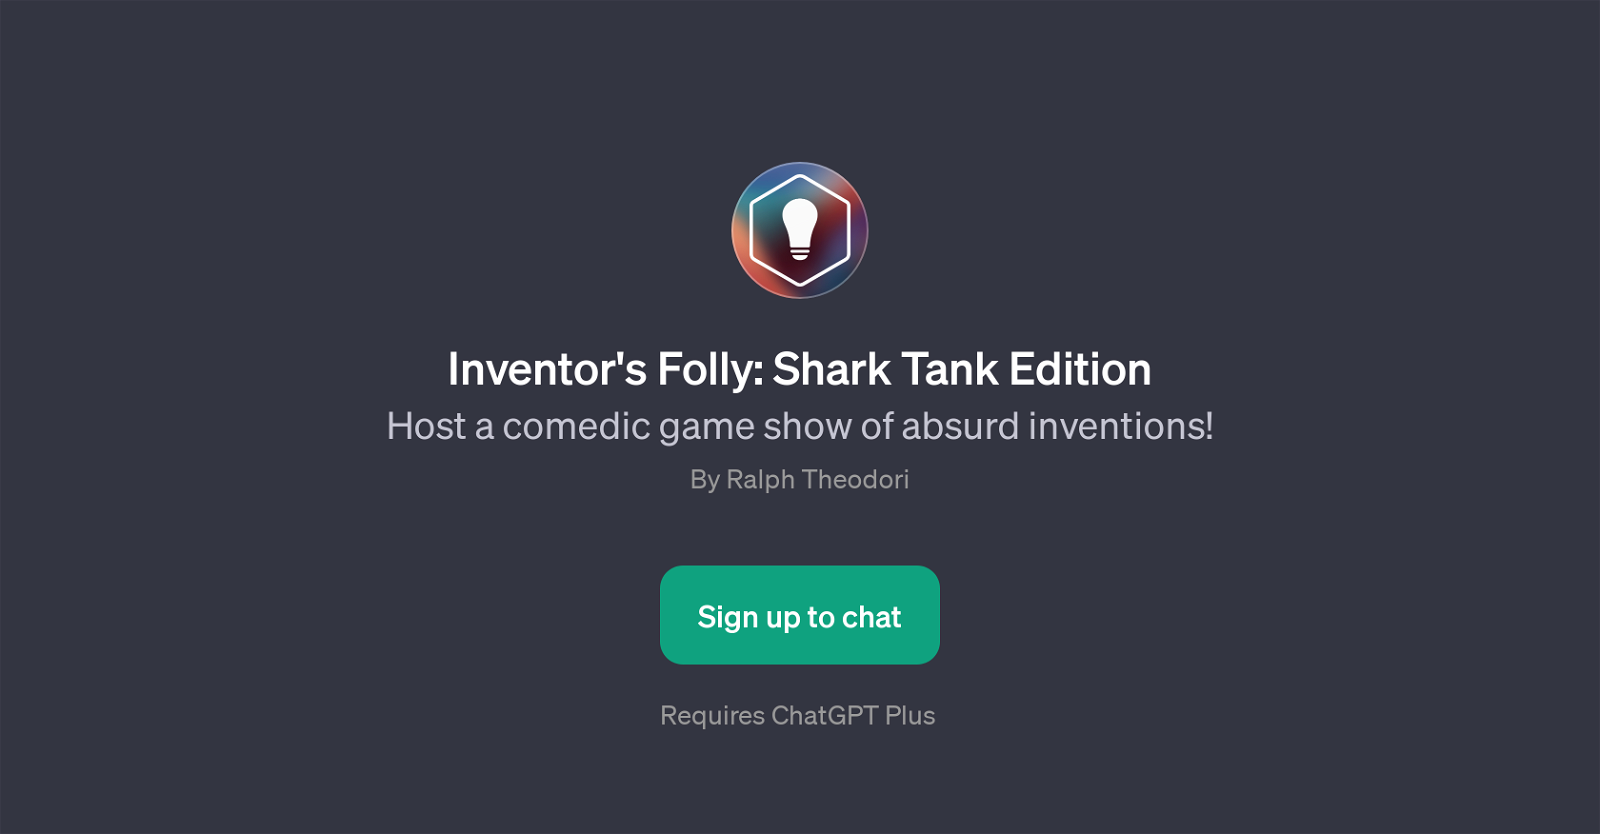 Inventor's Folly: Shark Tank Edition website